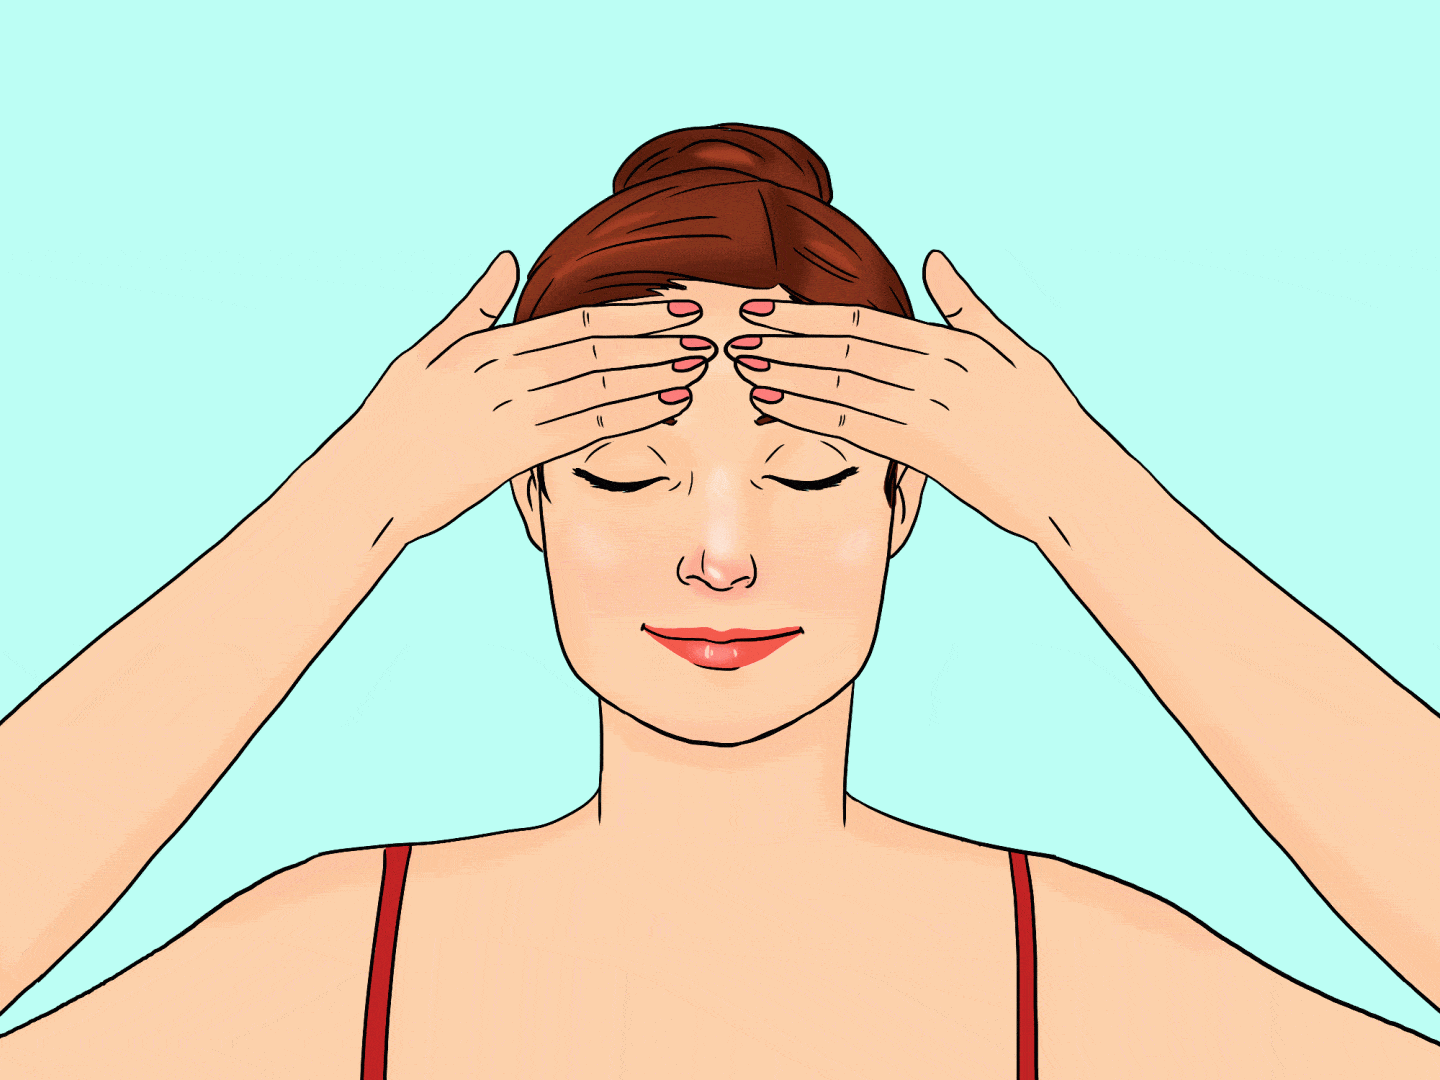 Massagem facial: Conheça os benefícios e aprenda como fazer em casa